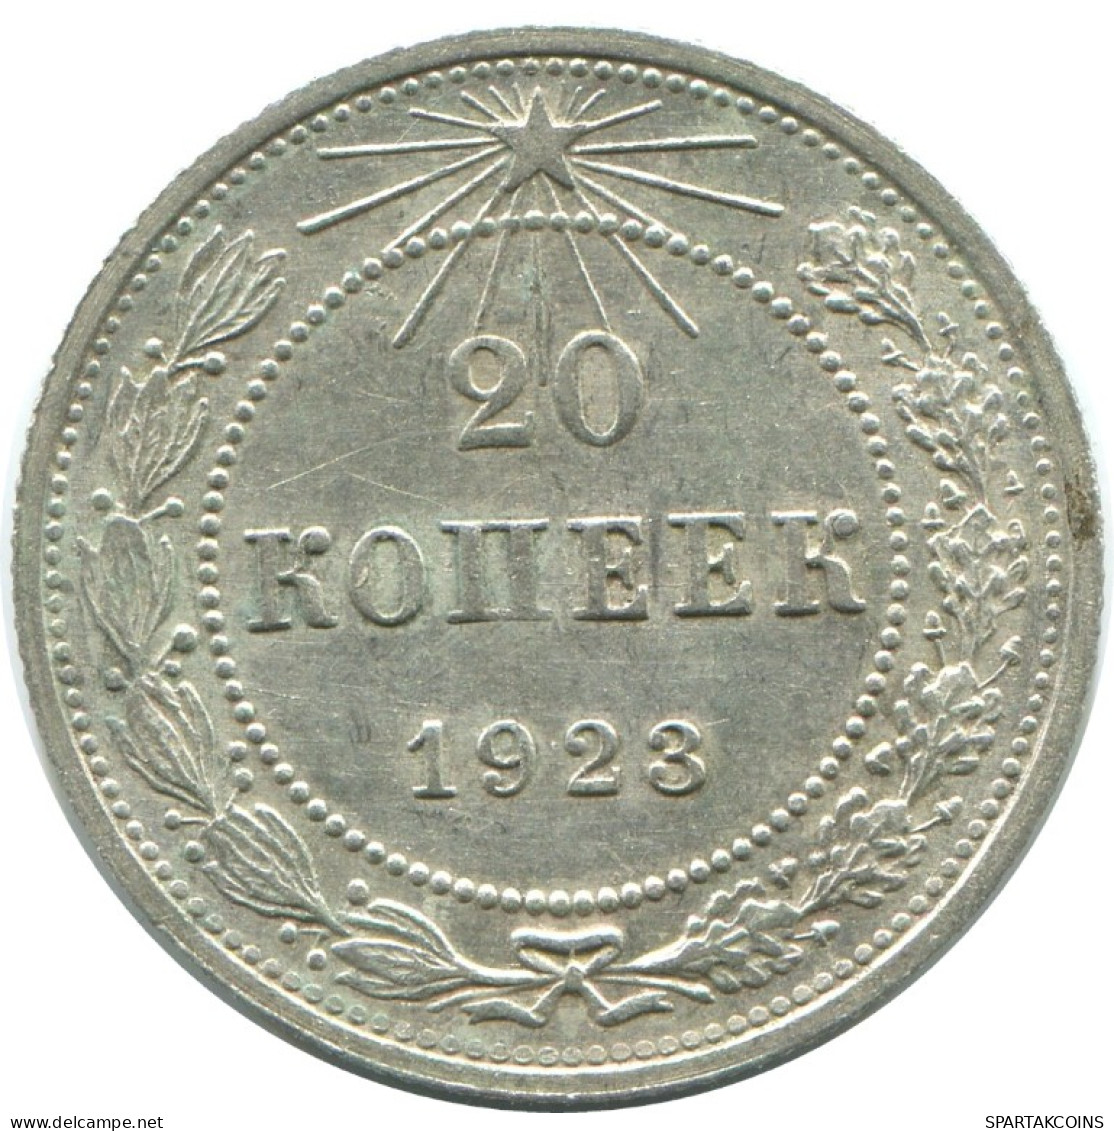 20 KOPEKS 1923 RUSIA RUSSIA RSFSR PLATA Moneda HIGH GRADE #AF556.4.E.A - Russland